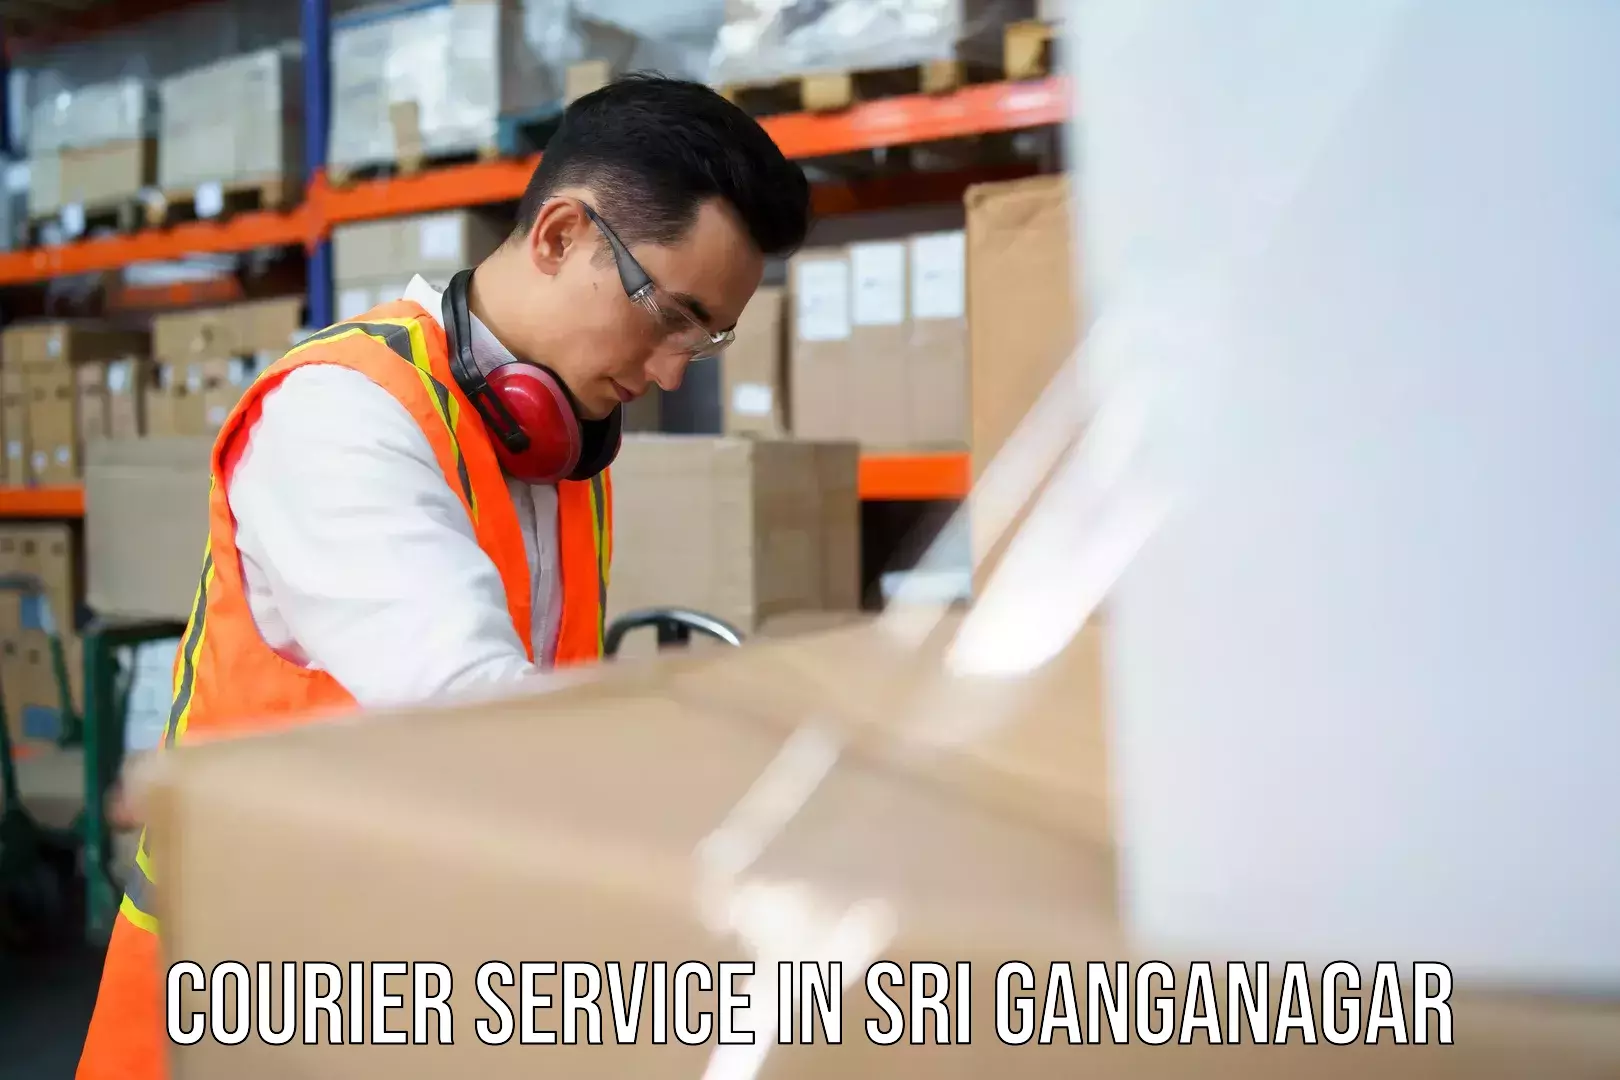 Efficient freight service in Sri Ganganagar